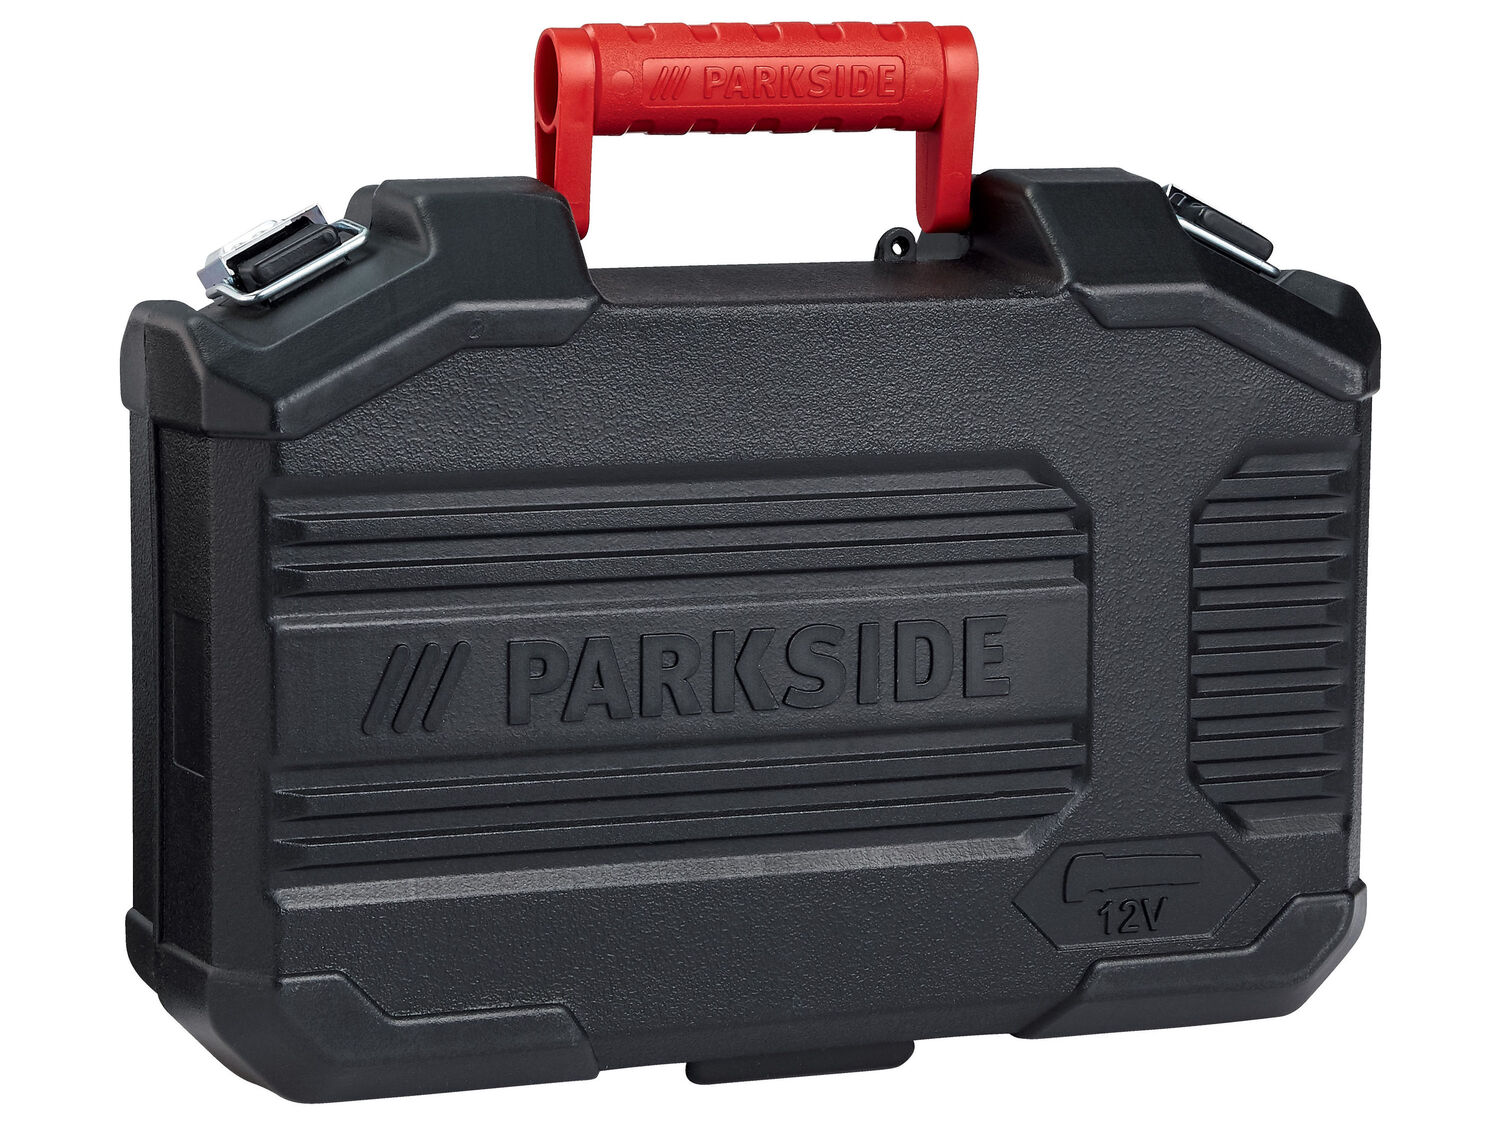 Akumulatorowe narzędzie wielofunkcyjne 12 V Parkside, cena 79,00 PLN 
- możliwość ...